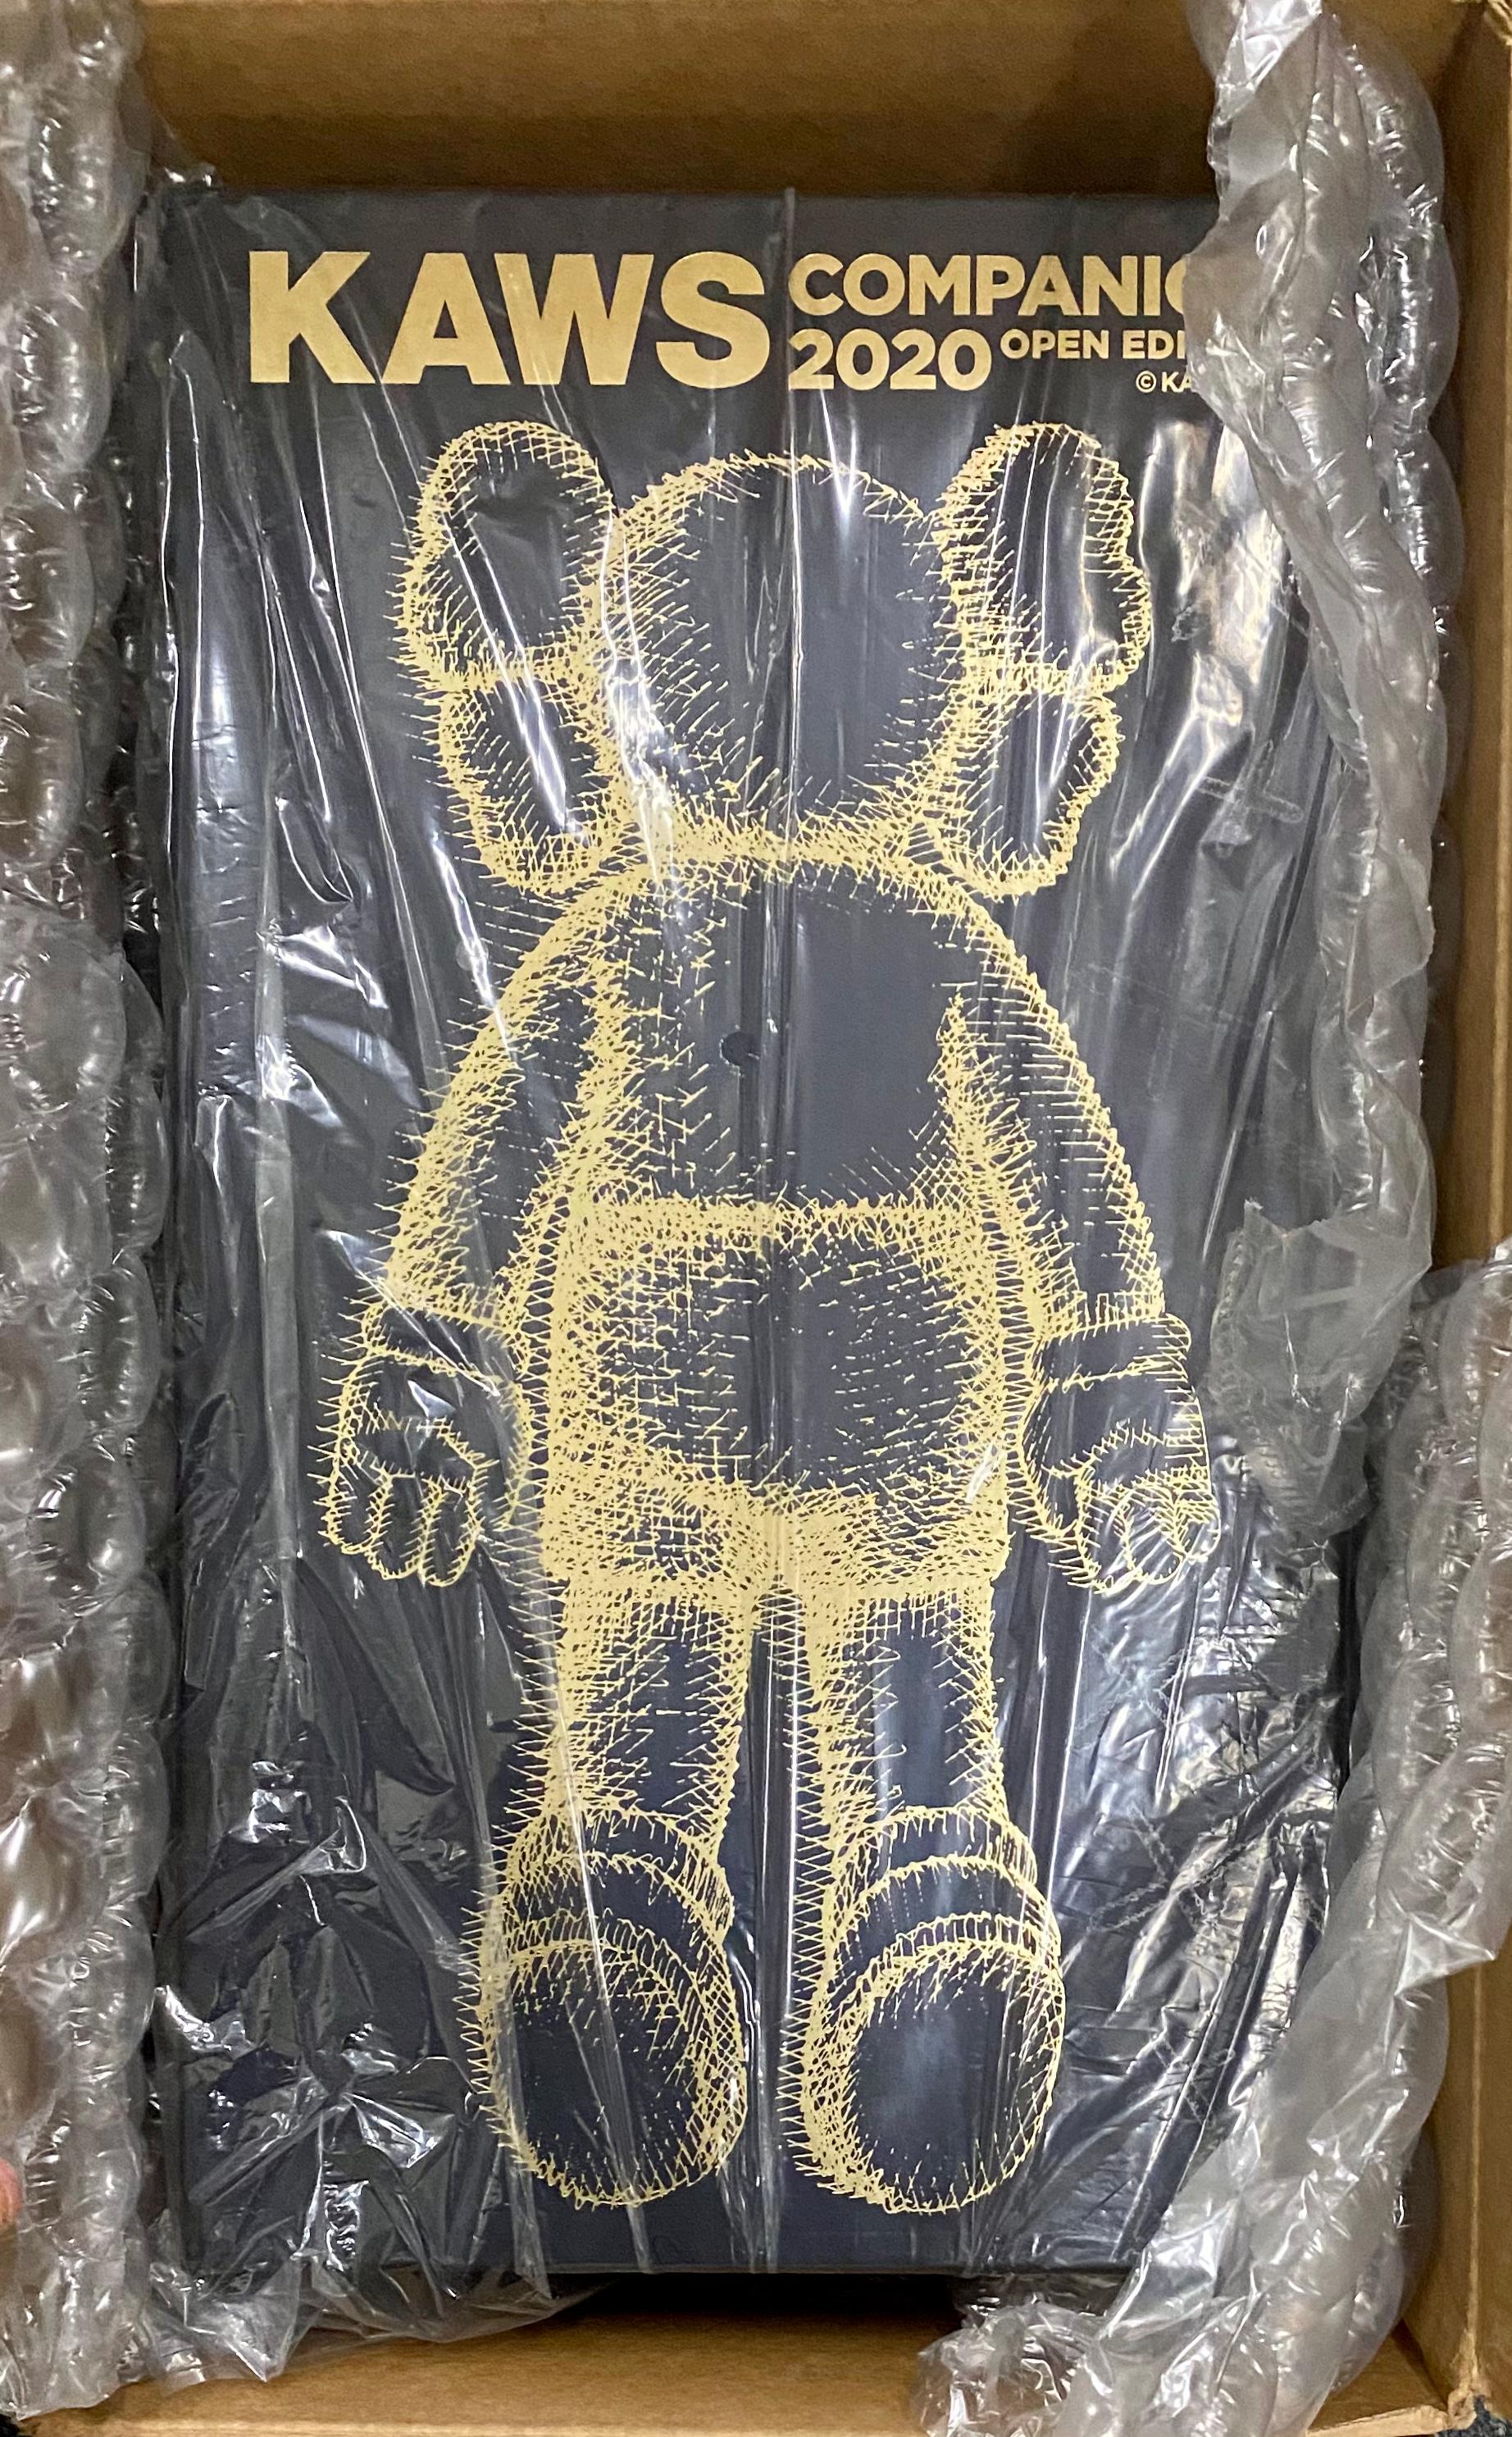 pikachu kaws figure